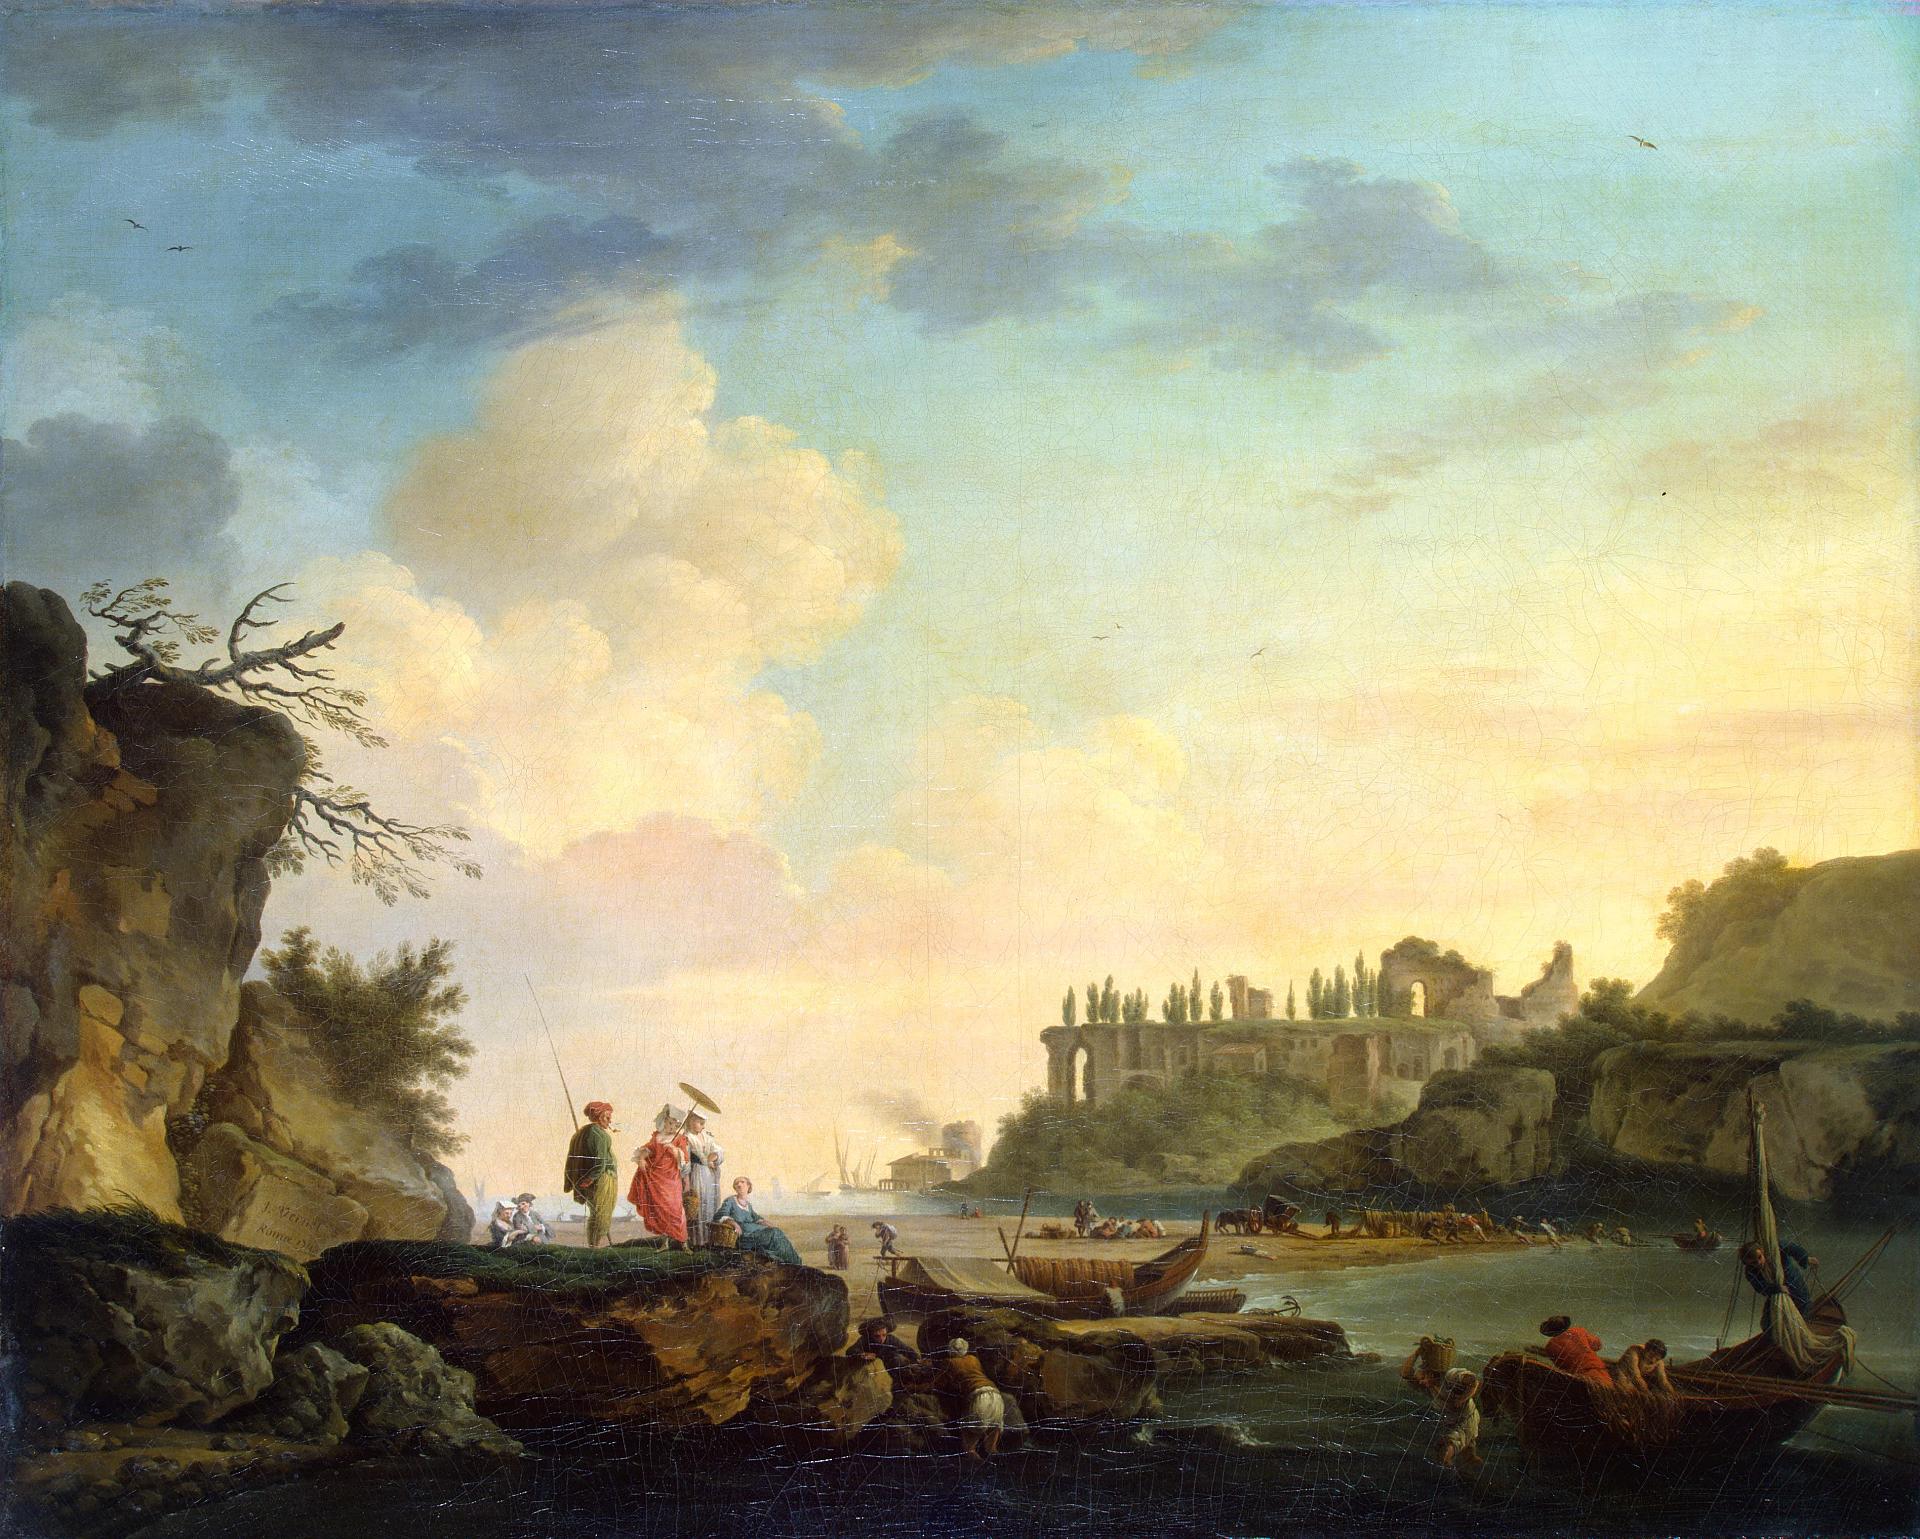 Клод Жозеф Верне. "Развалины у устья реки". 1748. Эрмитаж, Санкт-Петербург.